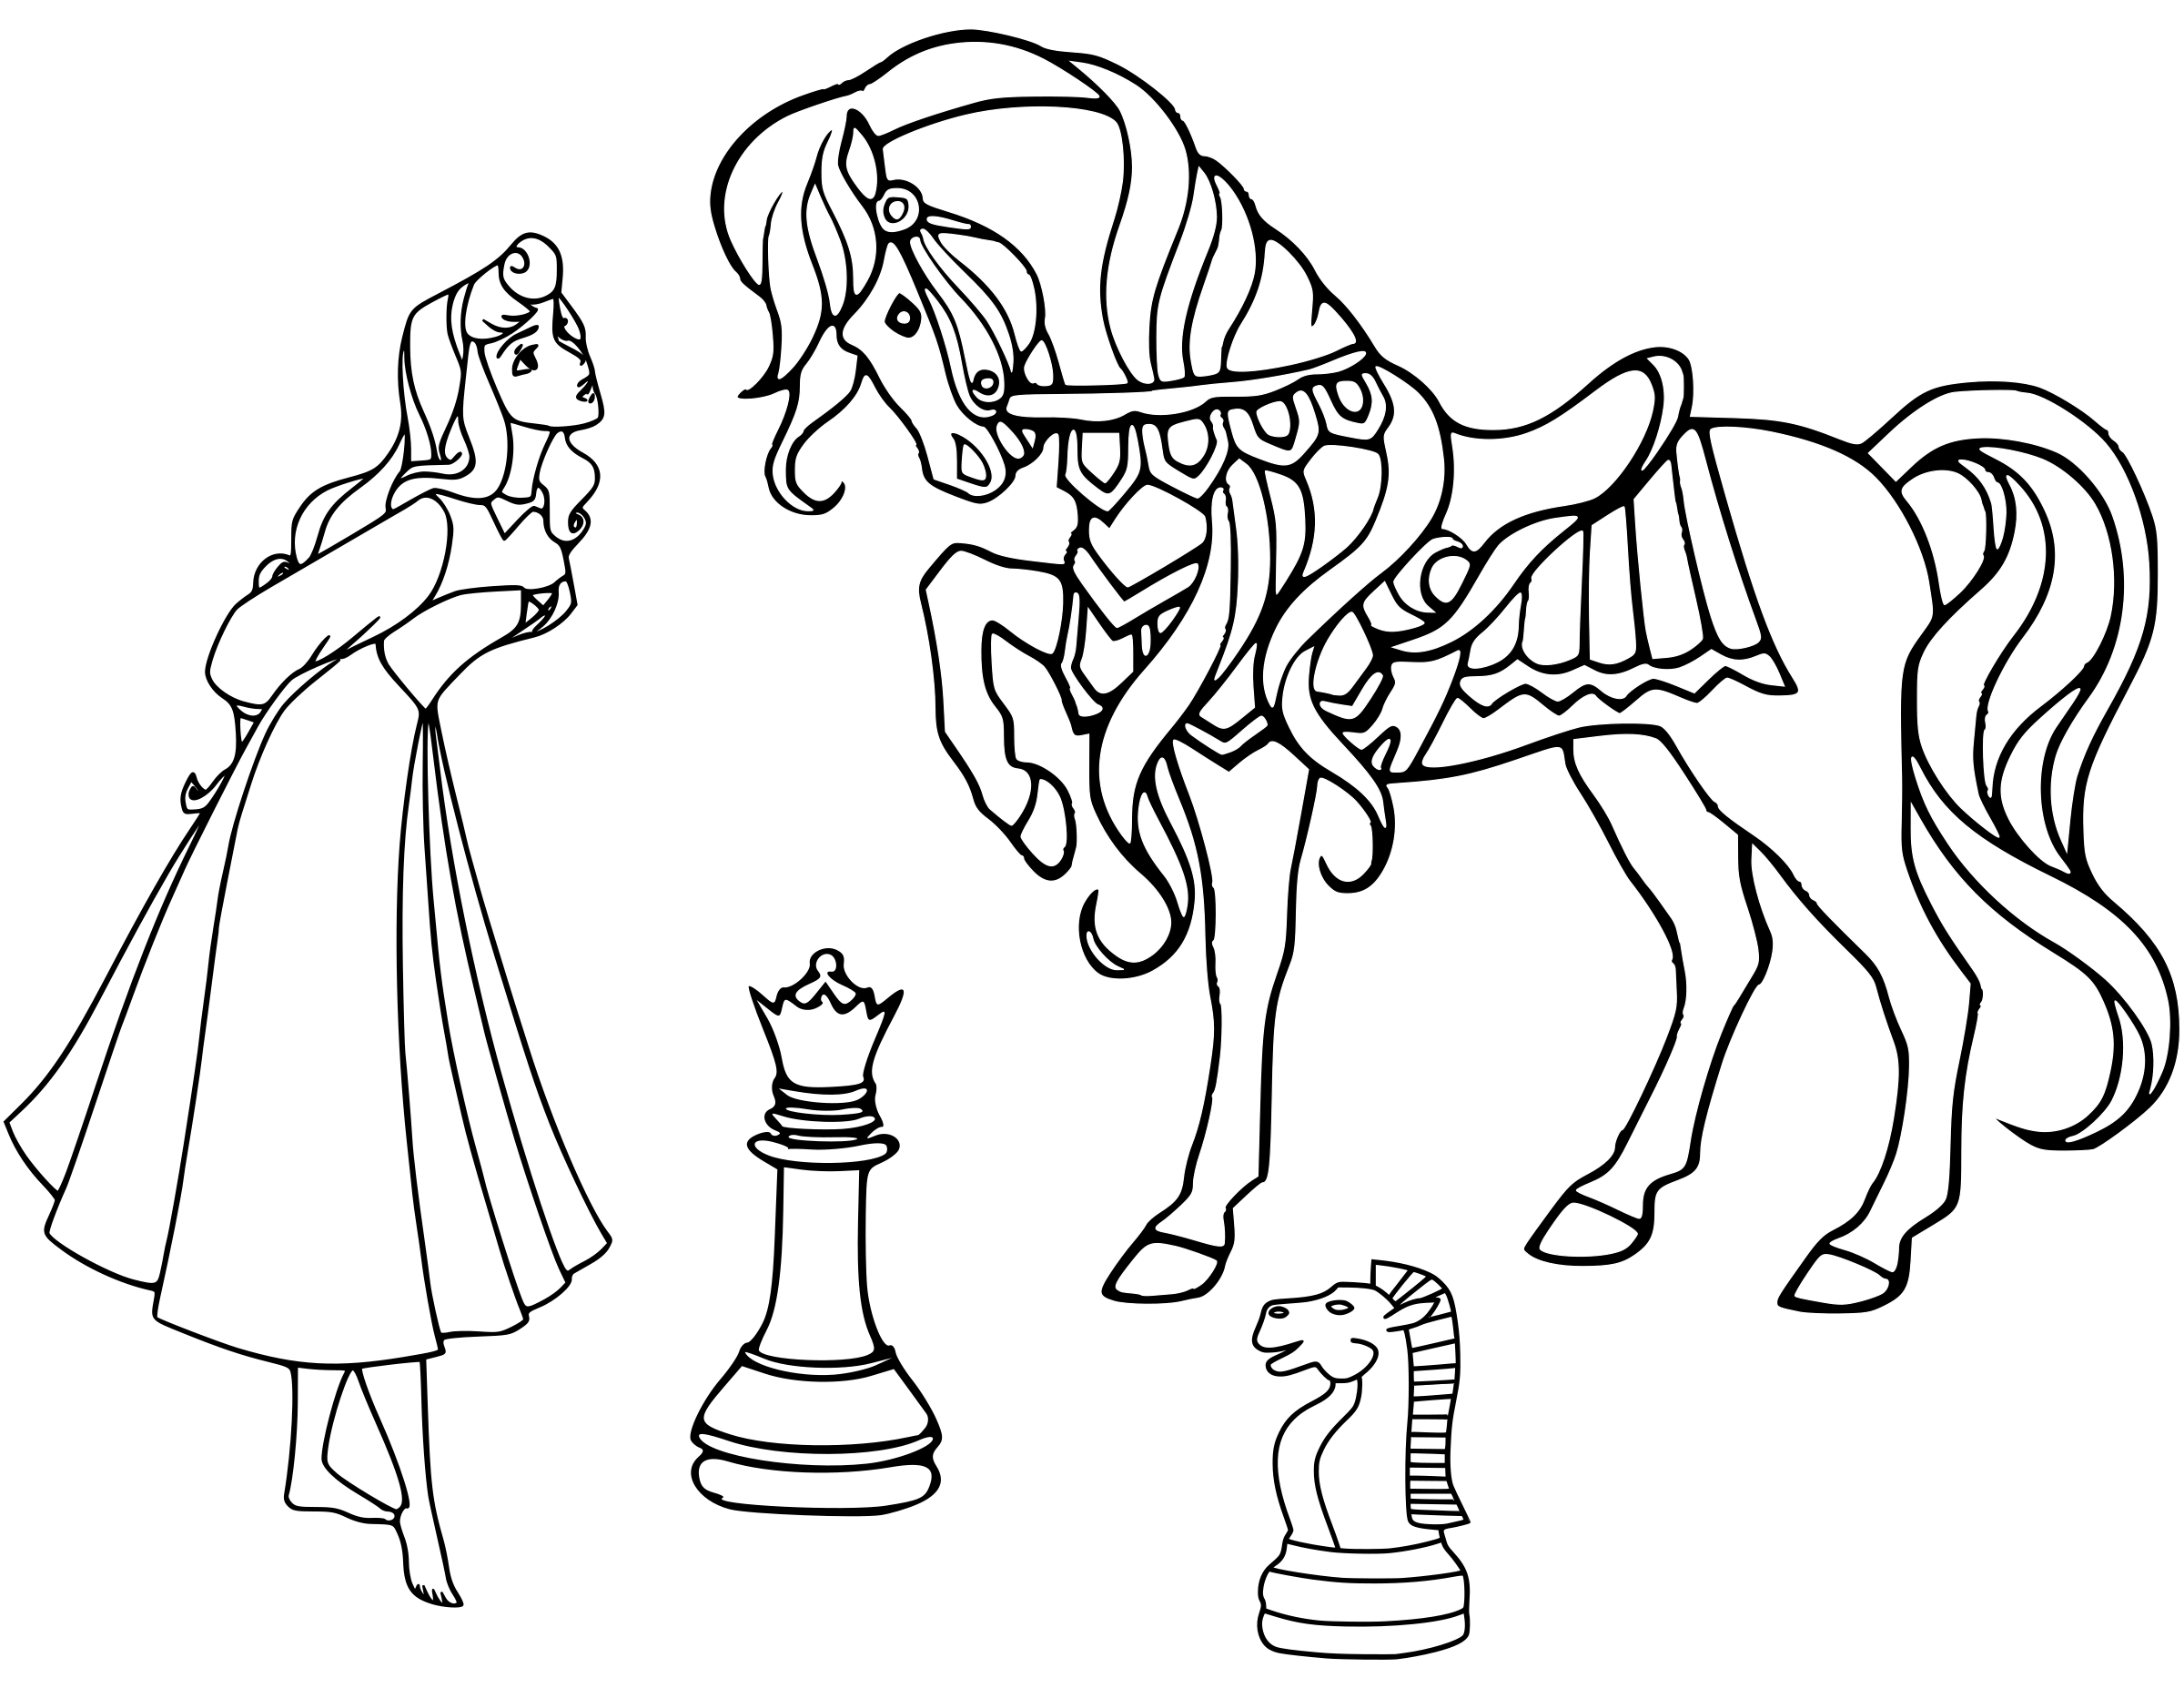 Chess coloring pages  Peças de xadrez, Páginas para colorir